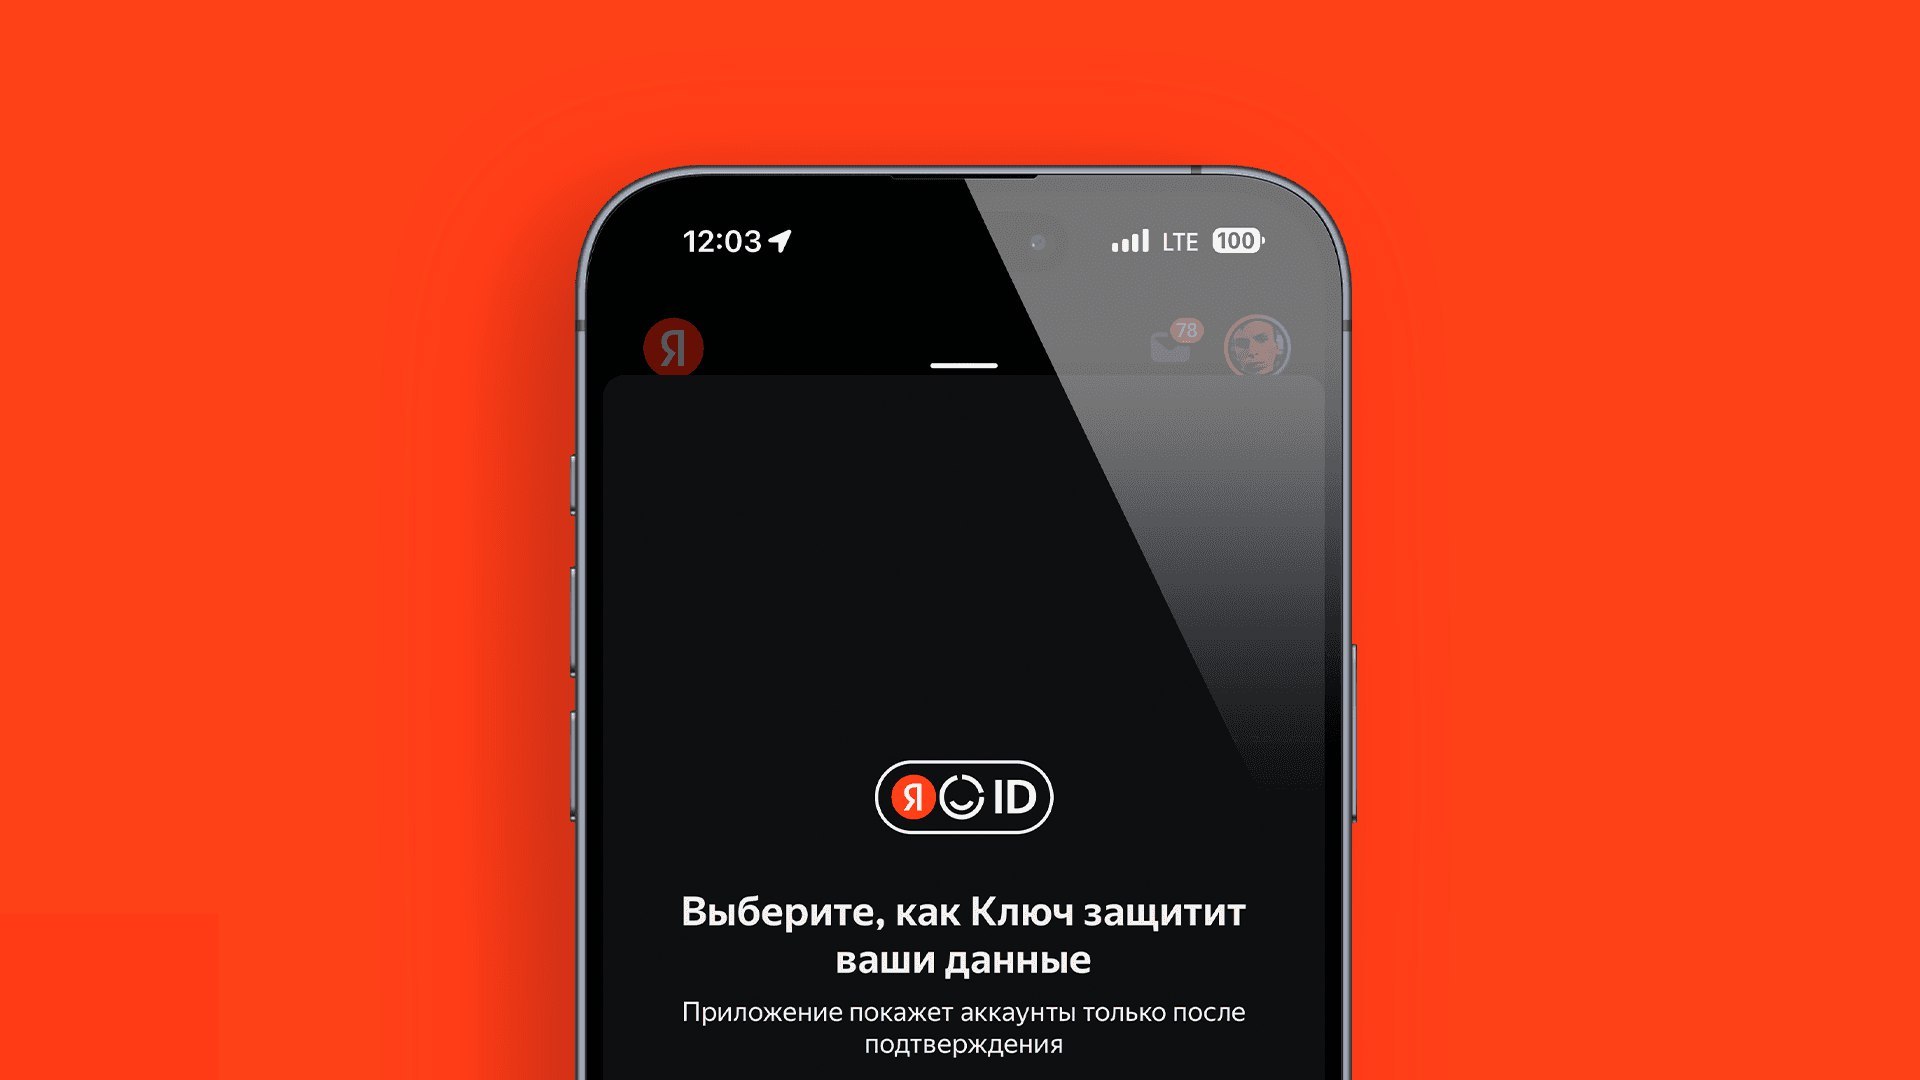 Приложение «Яндекс с Алисой» поможет моментально входить в аккаунты